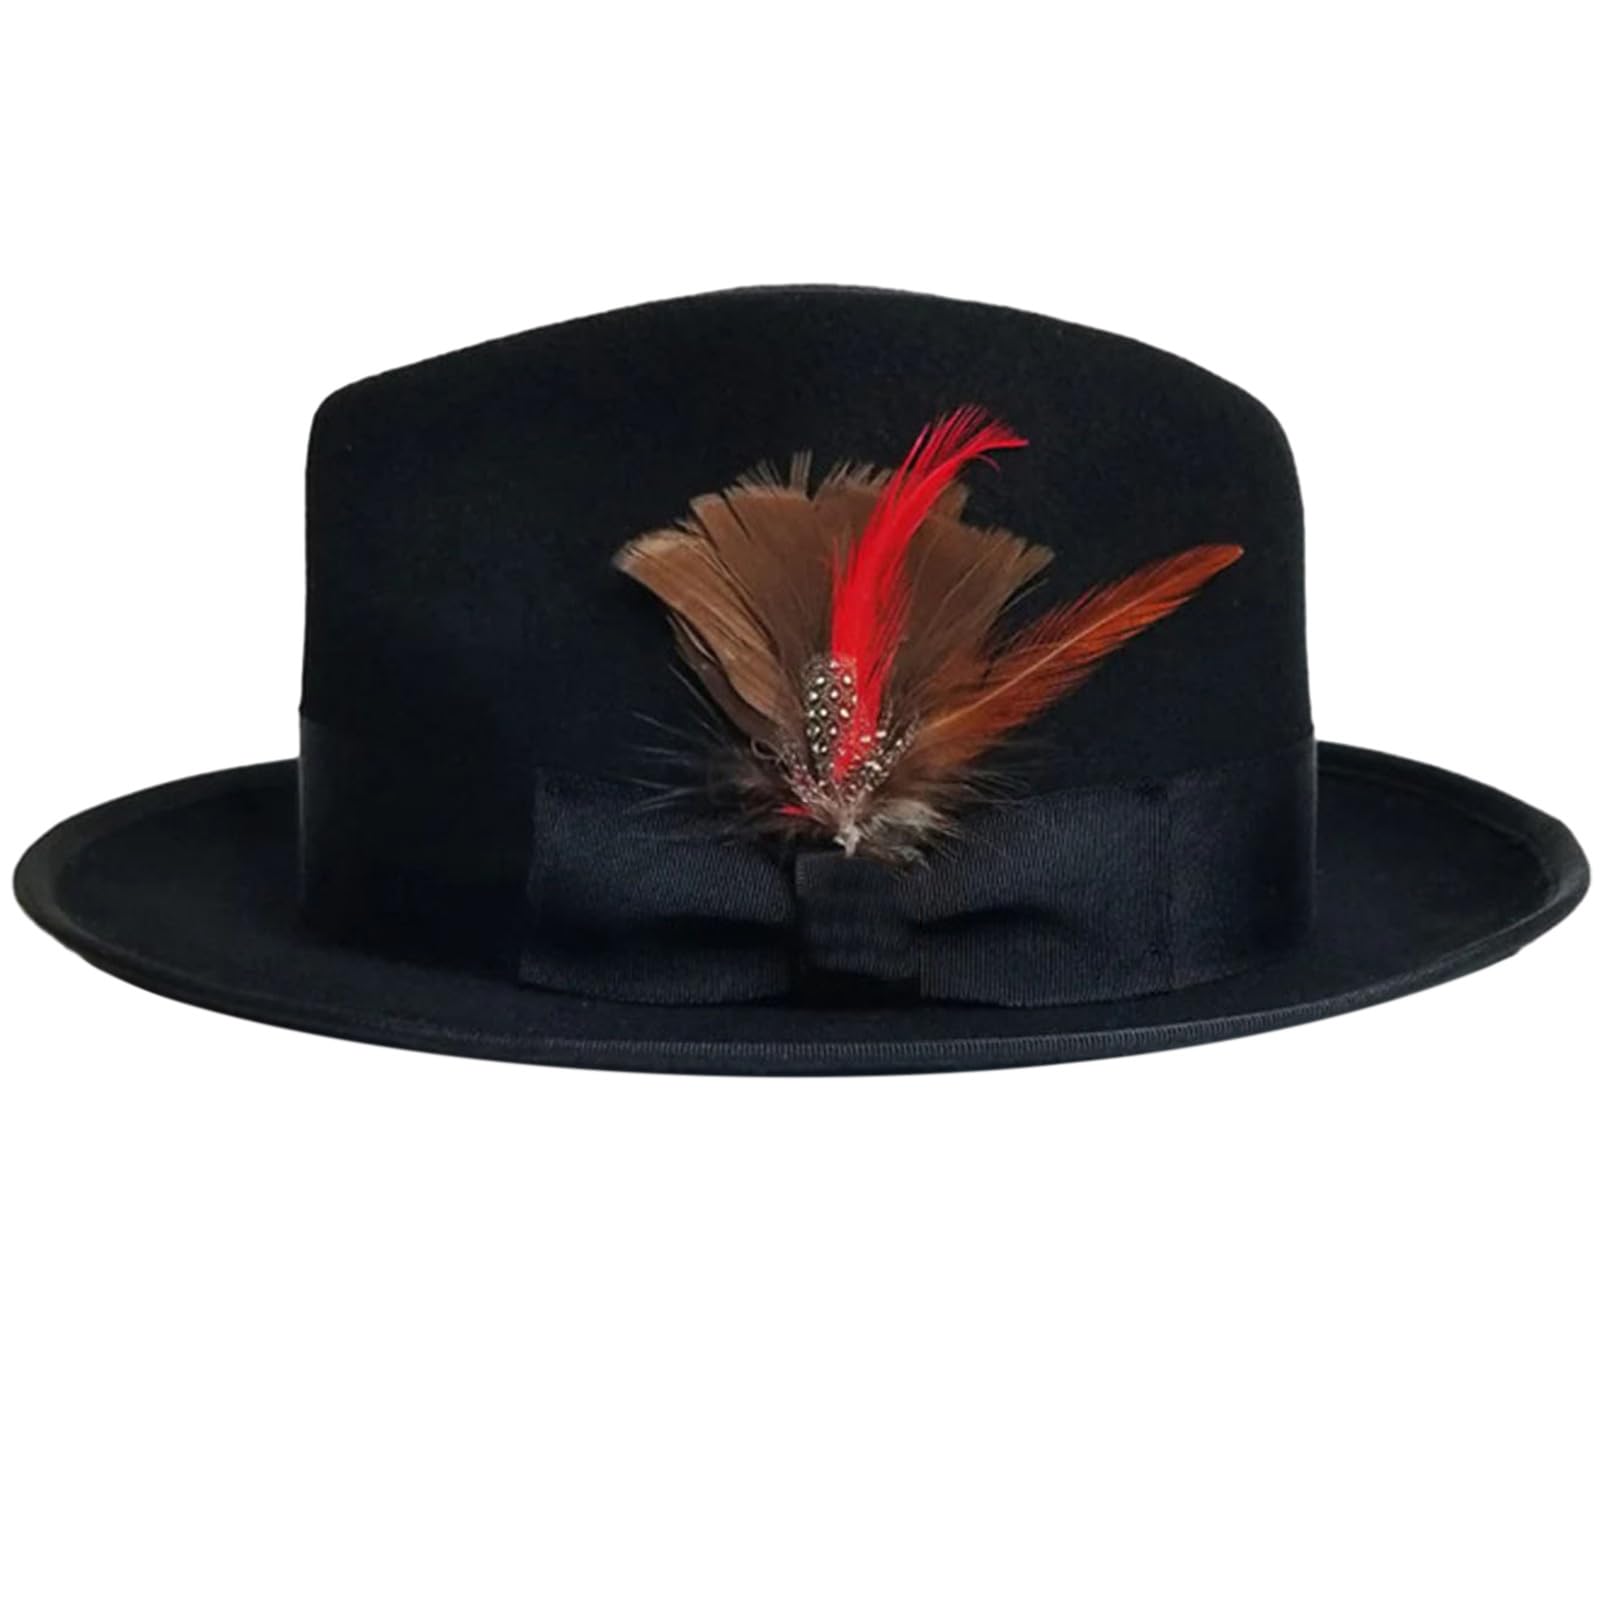 SELiLe Bühnenrequisiten Fedora Hut für Maskerade Party Gentleman Hut Jazzs Hut mit Federn Erwachsene Karneval Party Kostüm Zubehör Wollfilz Hut mit Federn